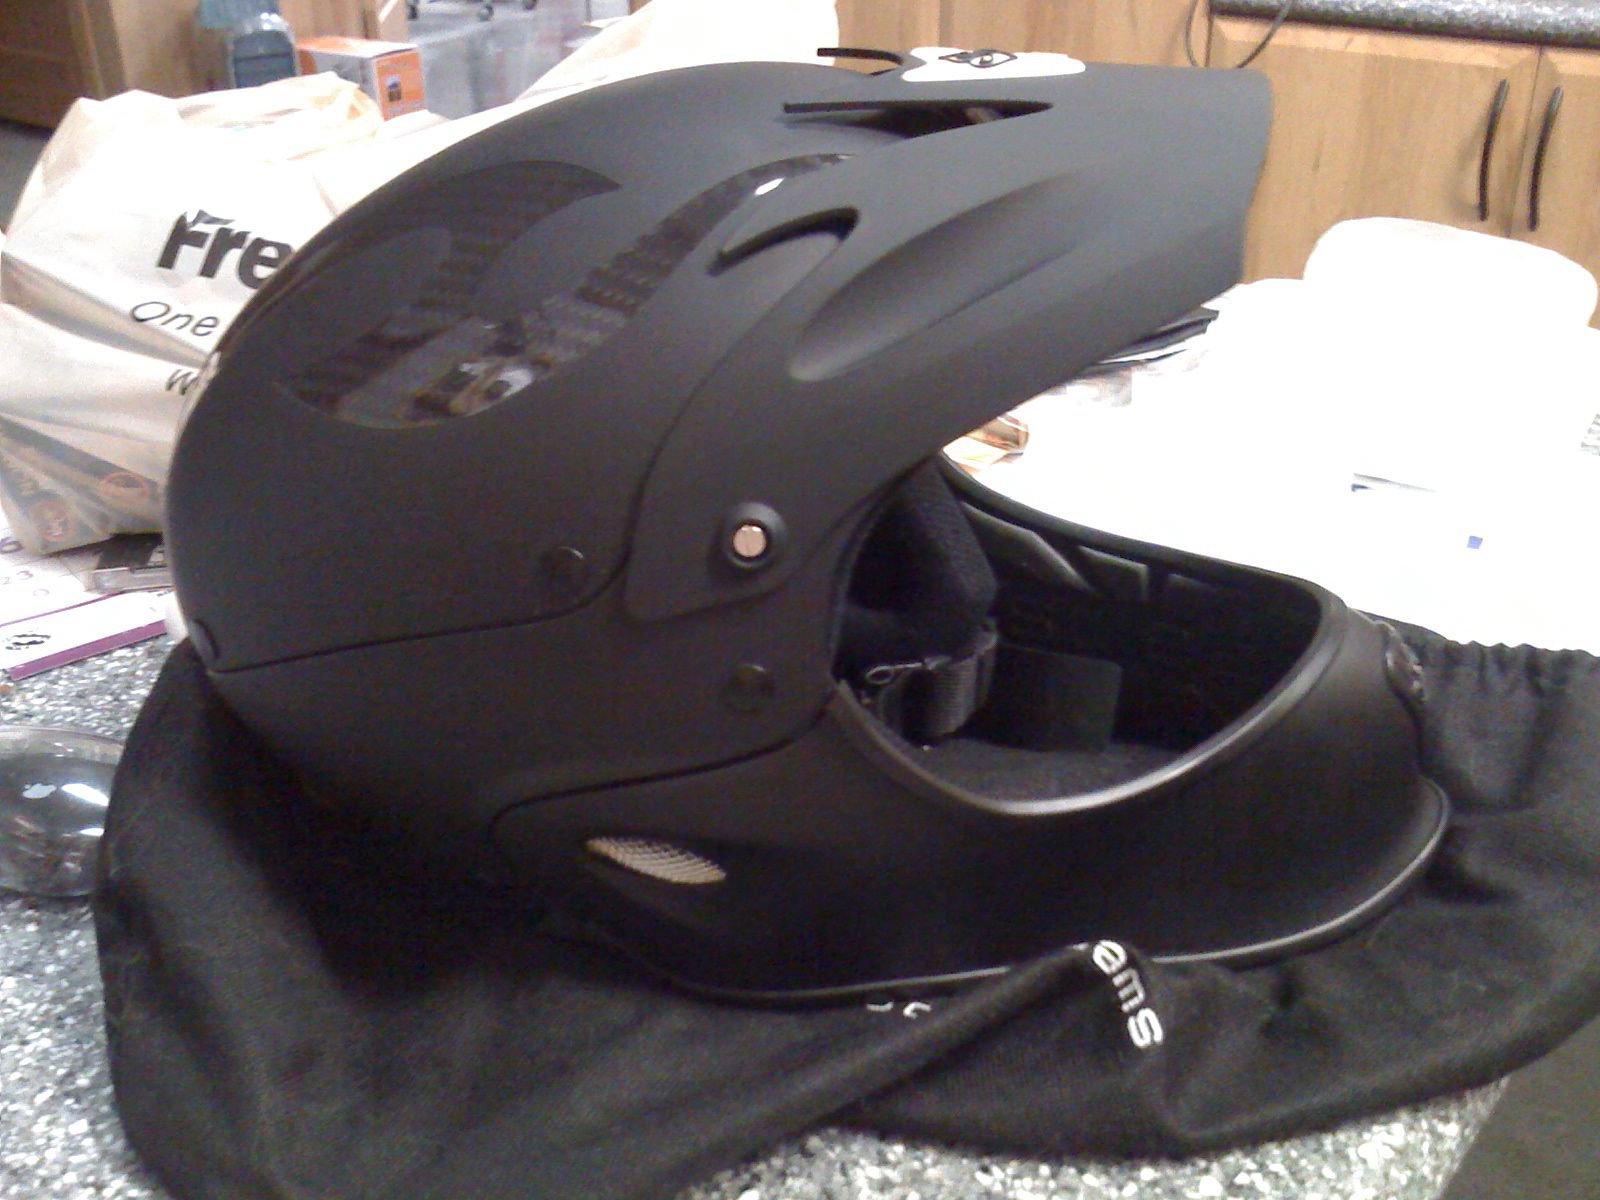 My new Helmet